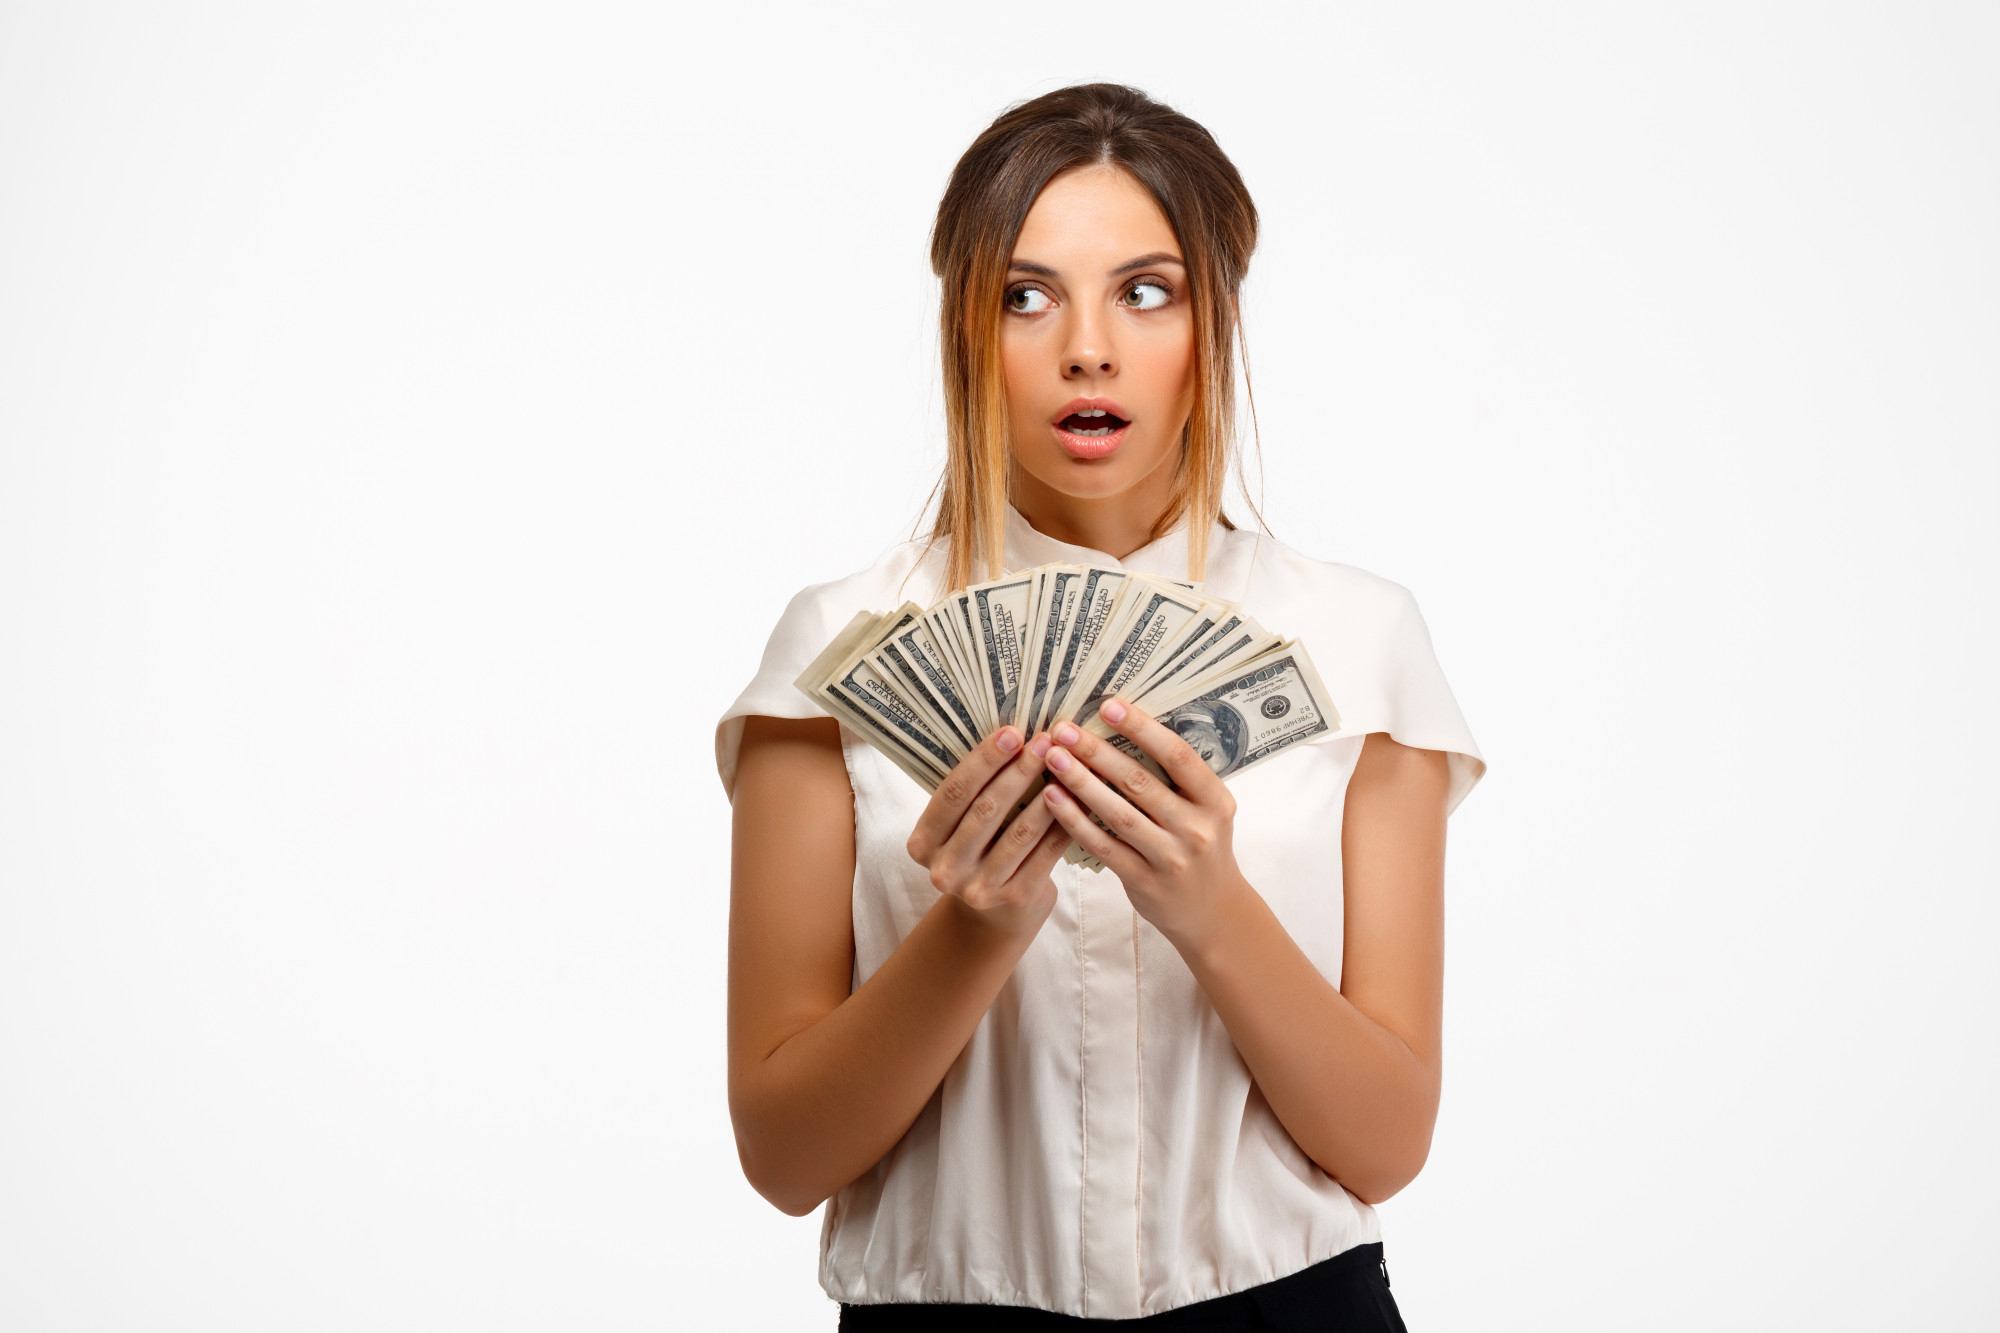 Una mujer joven con cara de sorpresa mientras sostiene dinero | Foto: Freepik